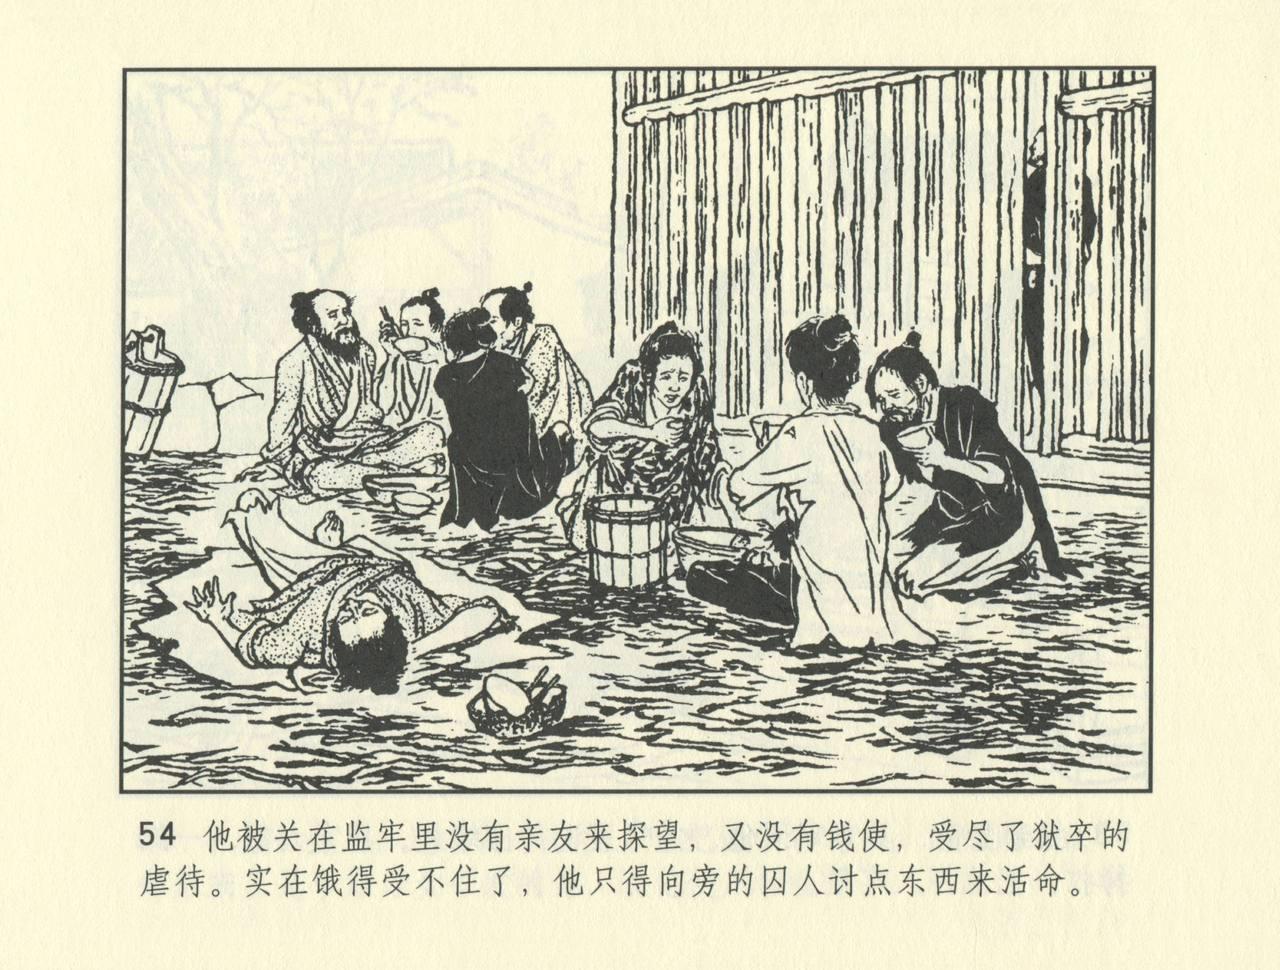 聊斋志异 张玮等绘 天津人民美术出版社 卷二十一 ~ 三十 526